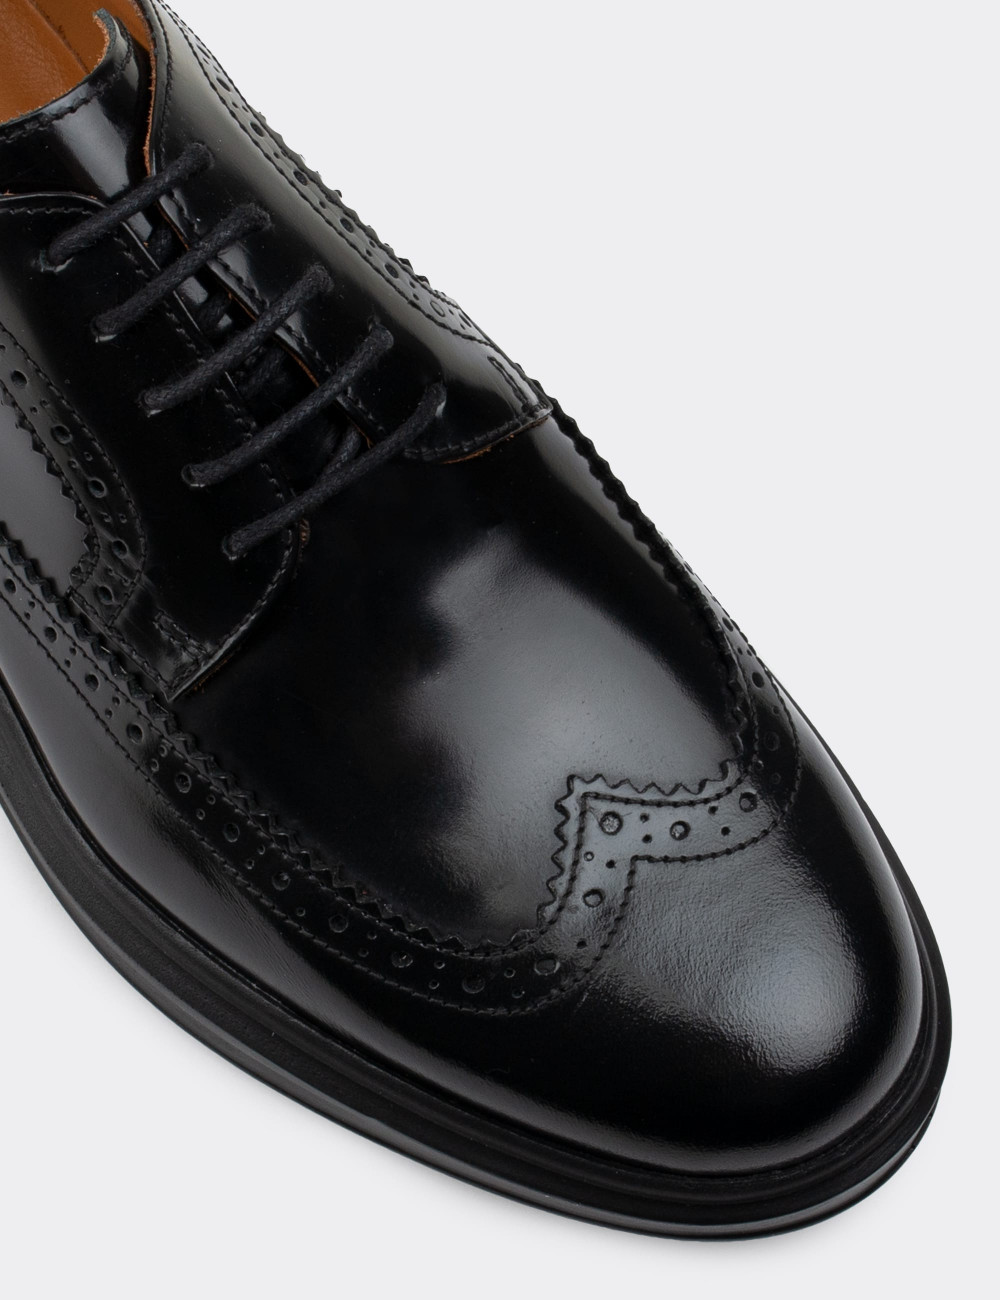 Hakiki Deri Siyah Comfort Günlük Erkek Ayakkabı - 01293MSYHP11